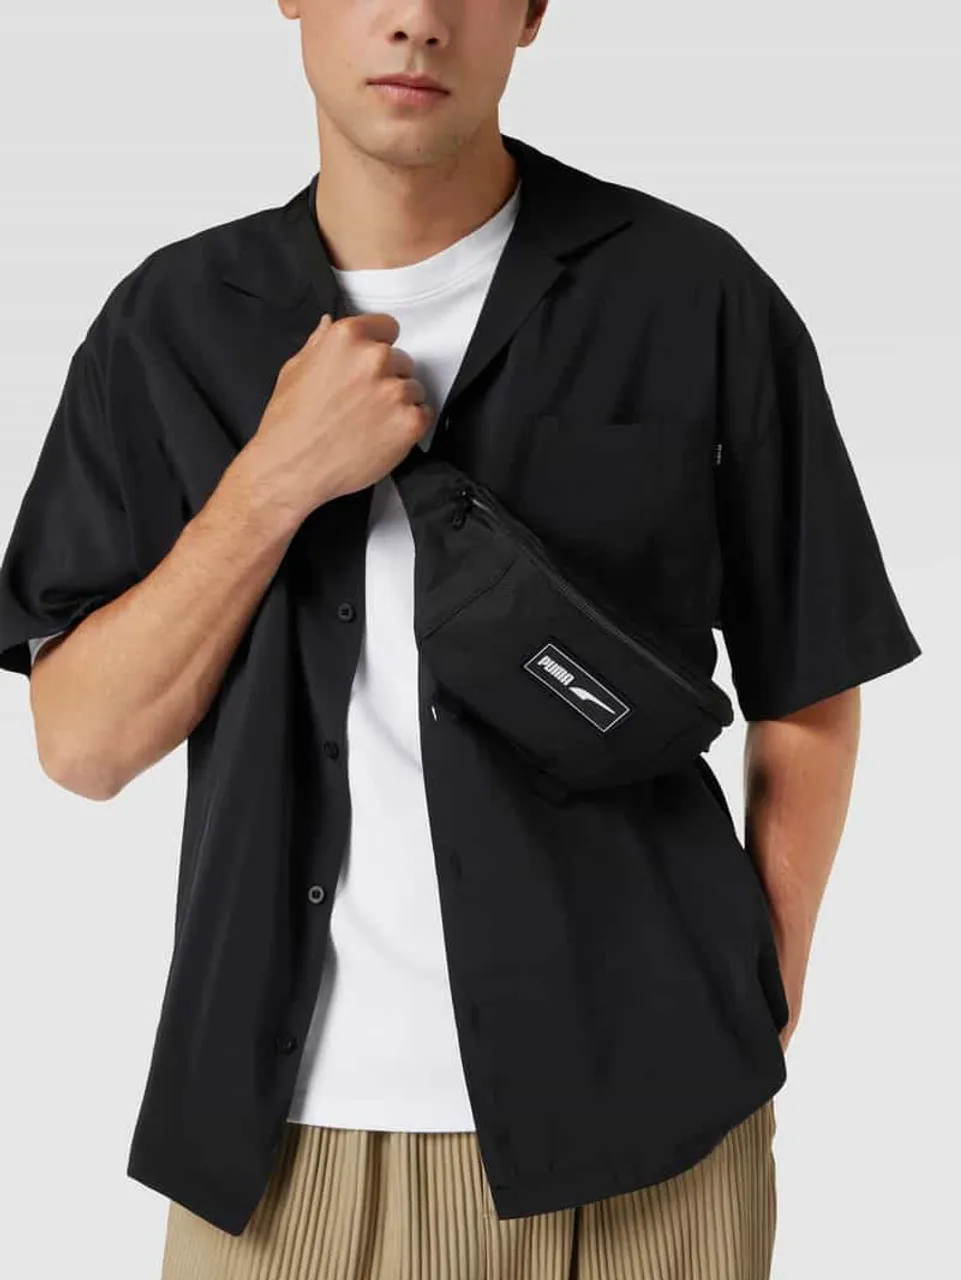 Puma Bauchtasche mit Label-Detail Modell 'PUMA Deck Waist Bag' in Black, Größe One Size